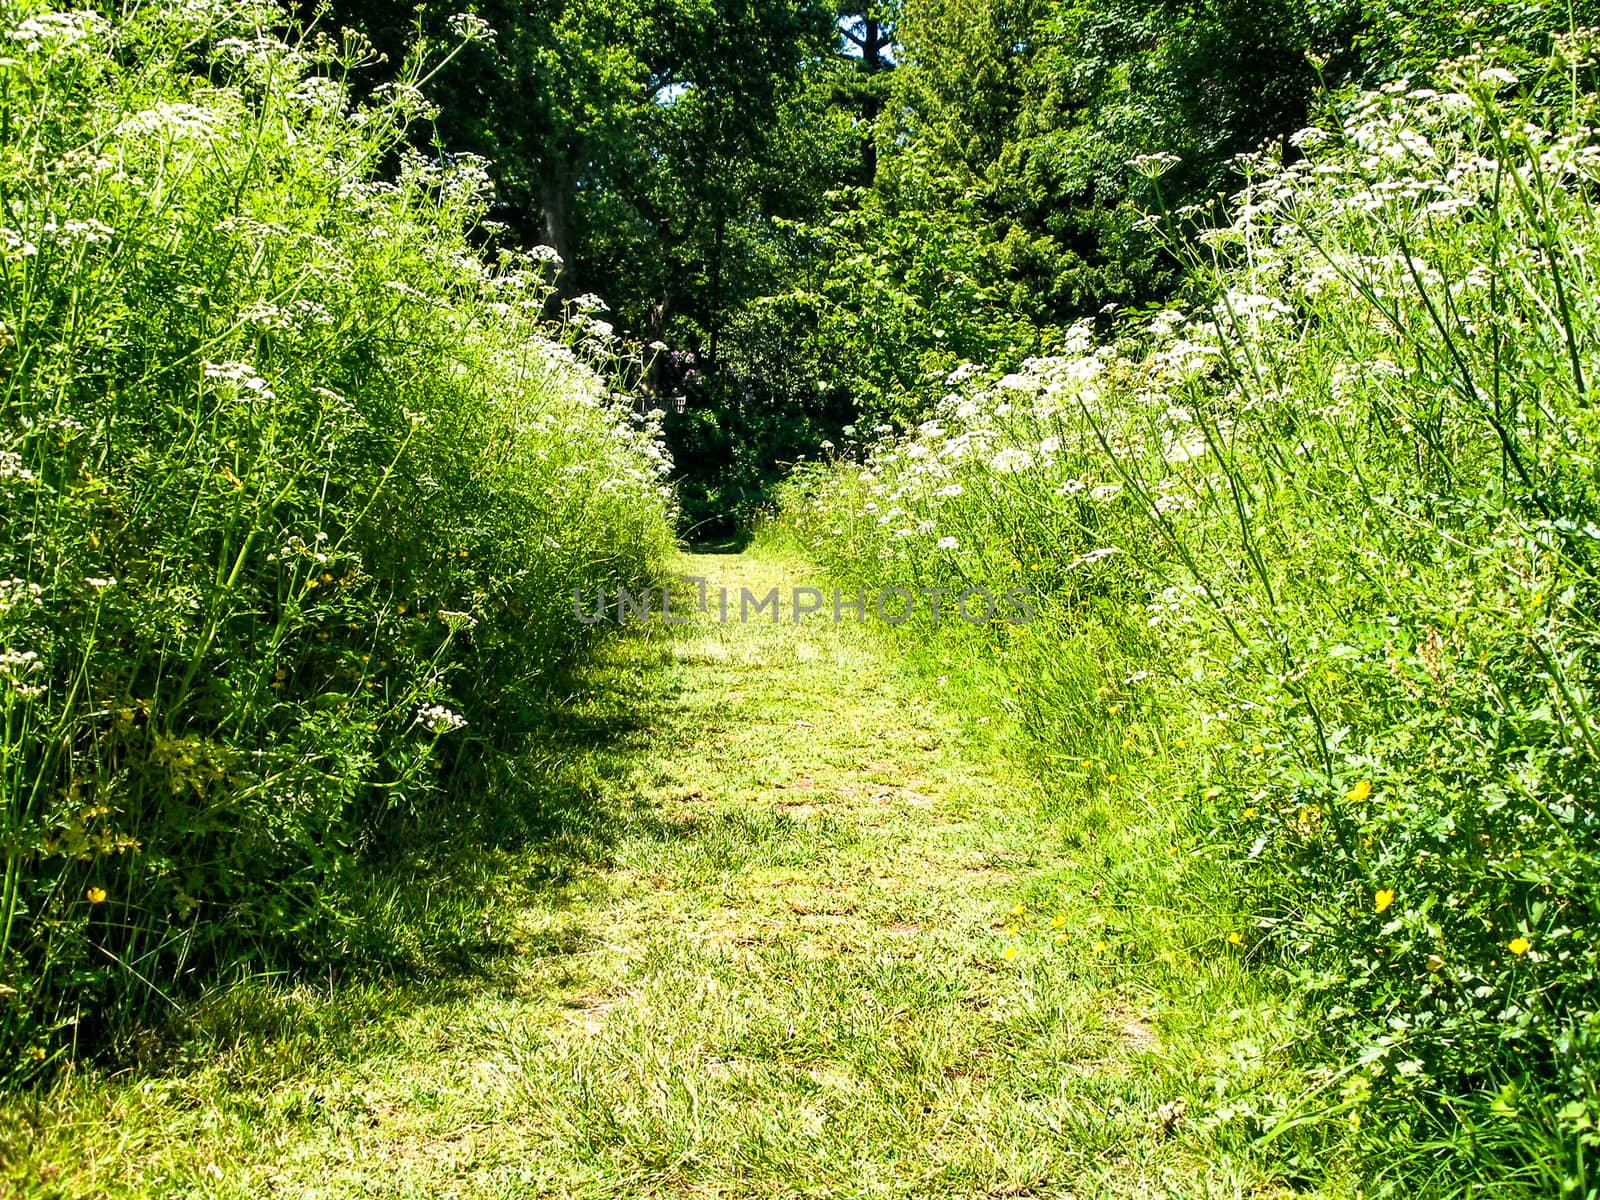 A grass path through tall plants / weeds